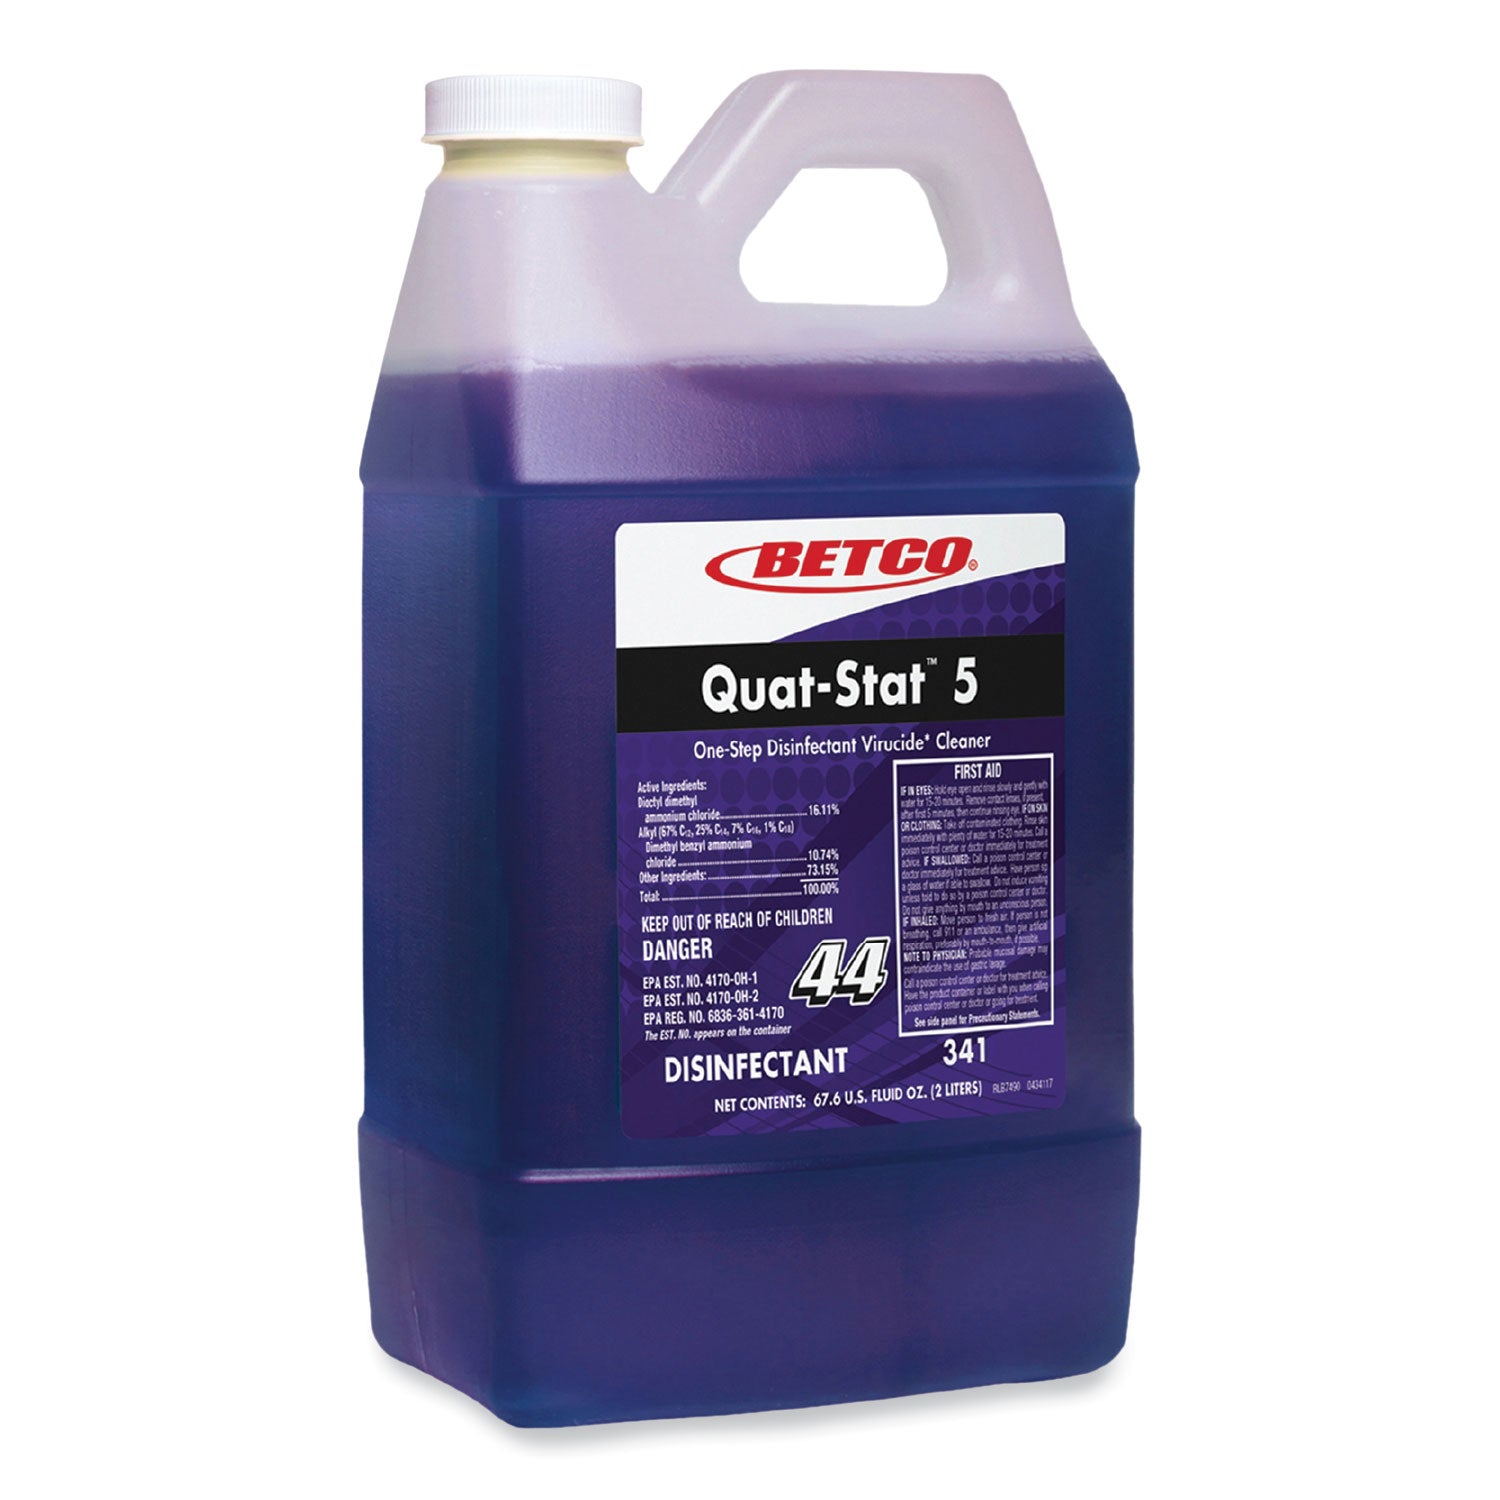 quat-stat-5-disinfectant-lavender-scent-2-l-bottle-4-carton_bet3414700 - 1